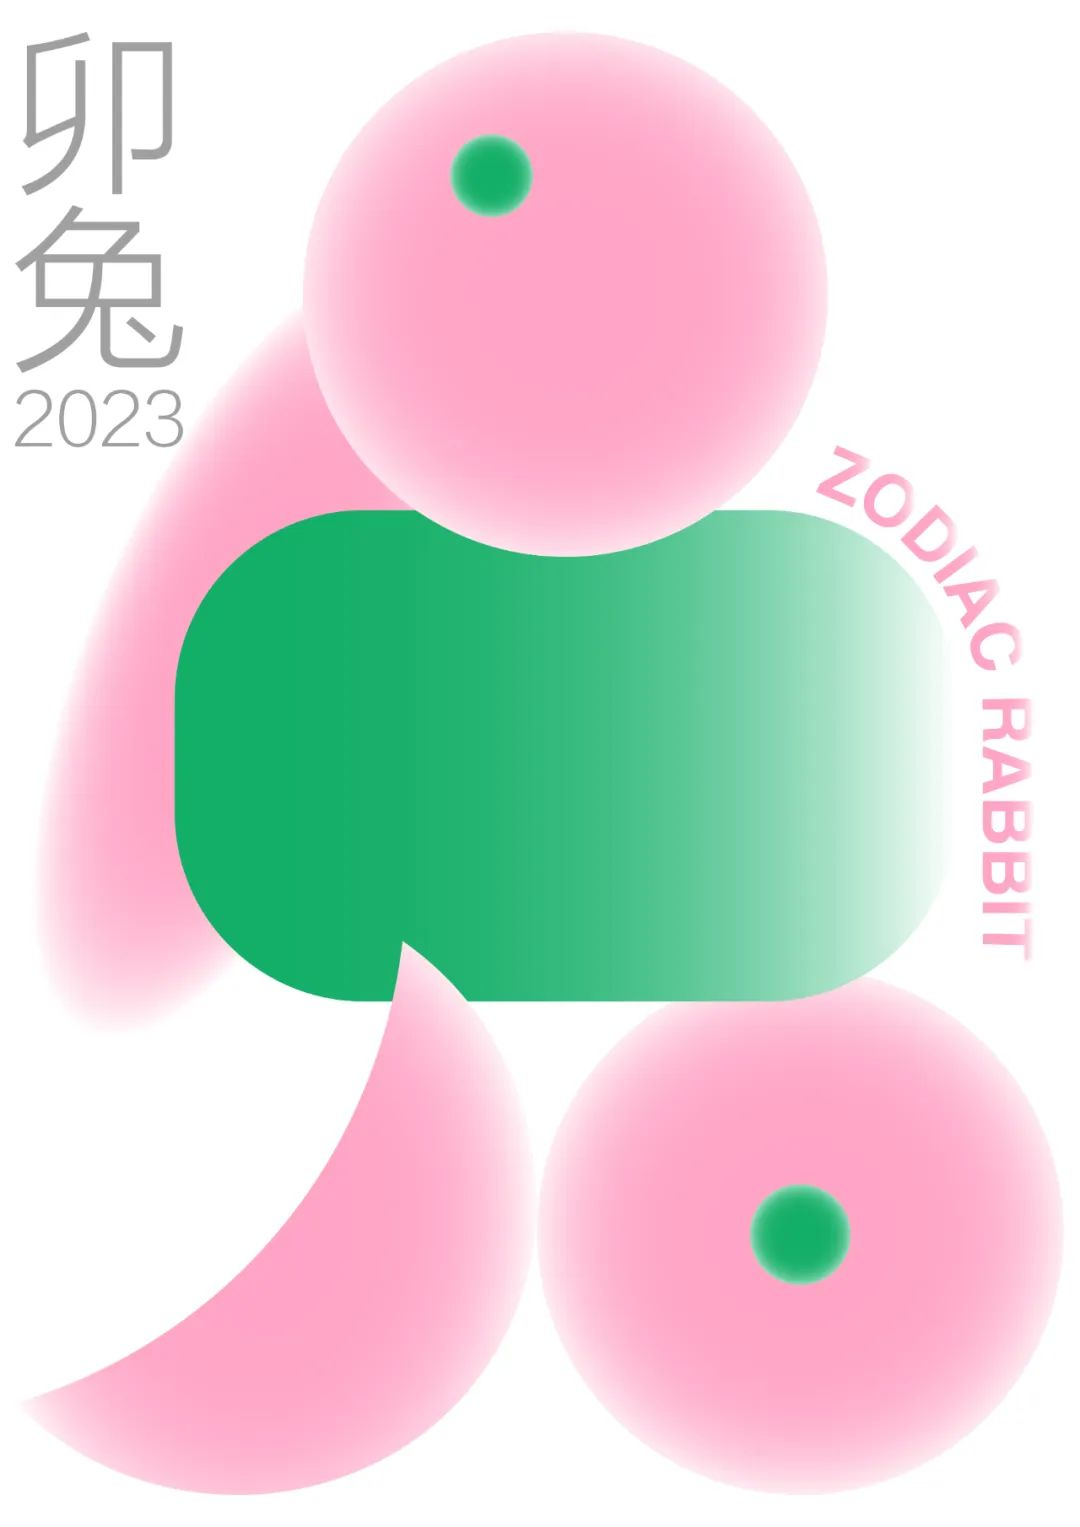 2023中国高校生肖设计大赛获奖作品